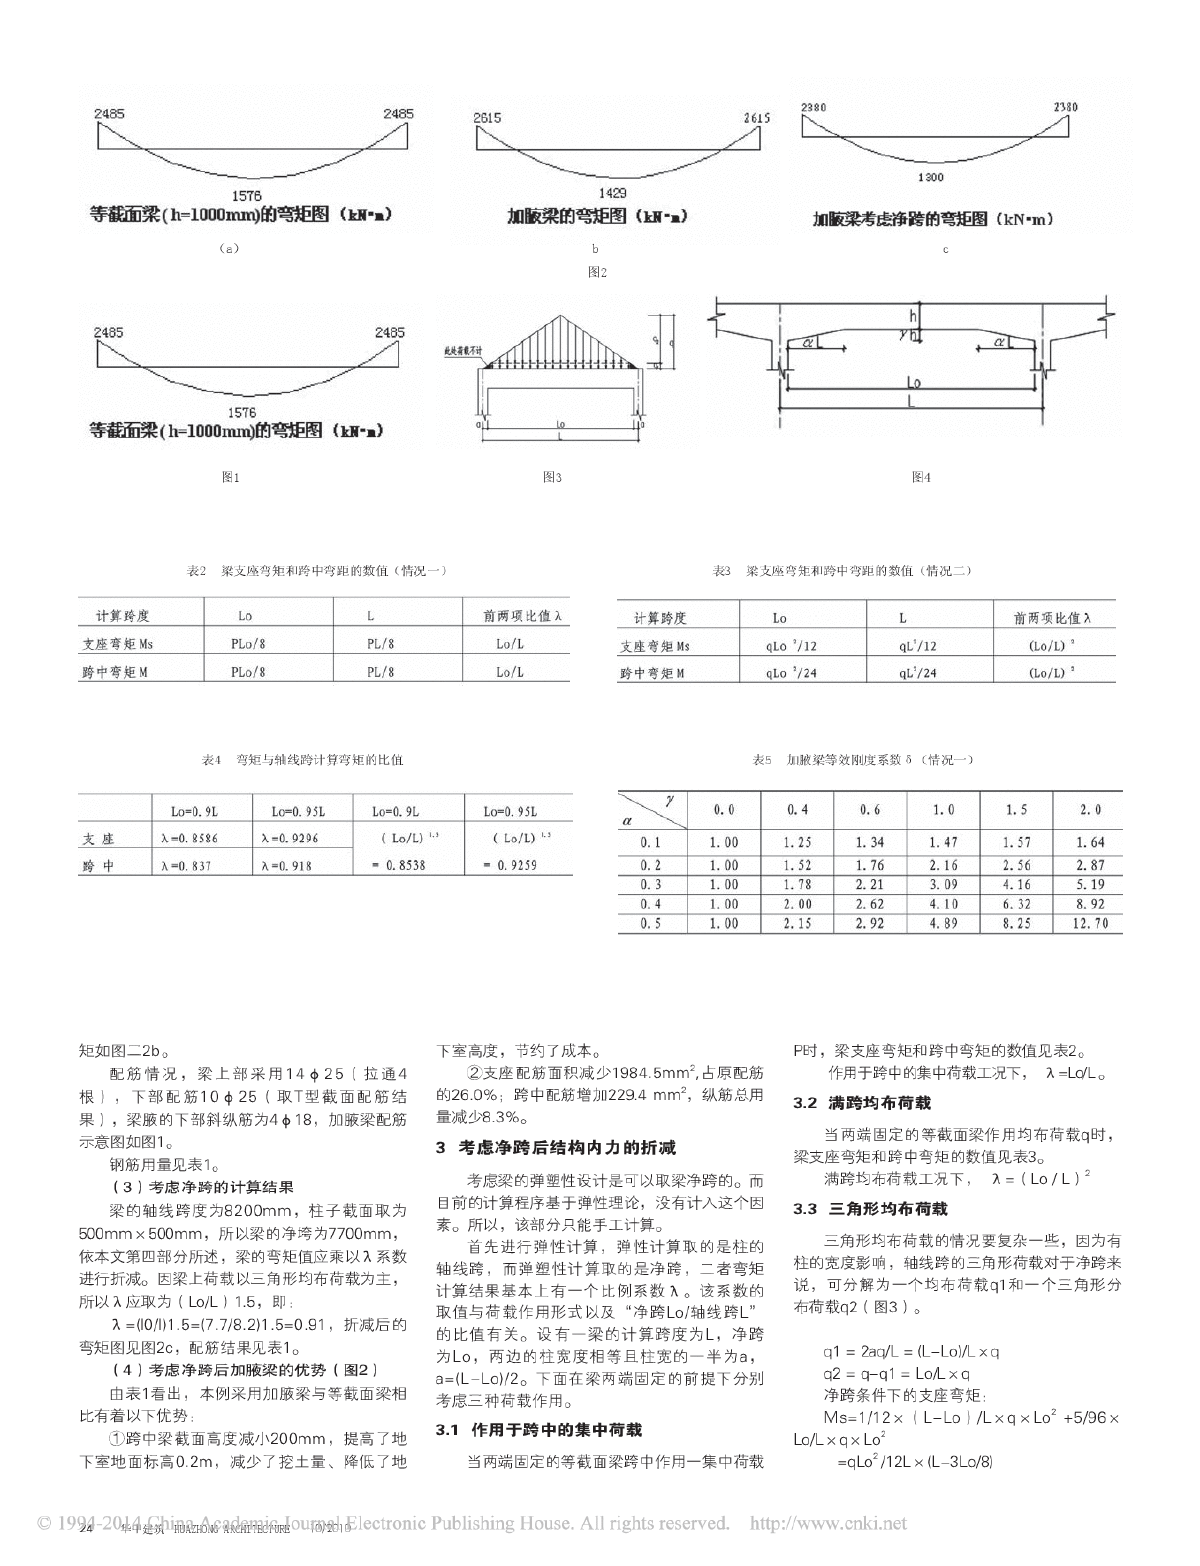  Design of haunching beam of air defense basement roof _ Zheng Xiaoqing pdf - Figure 2